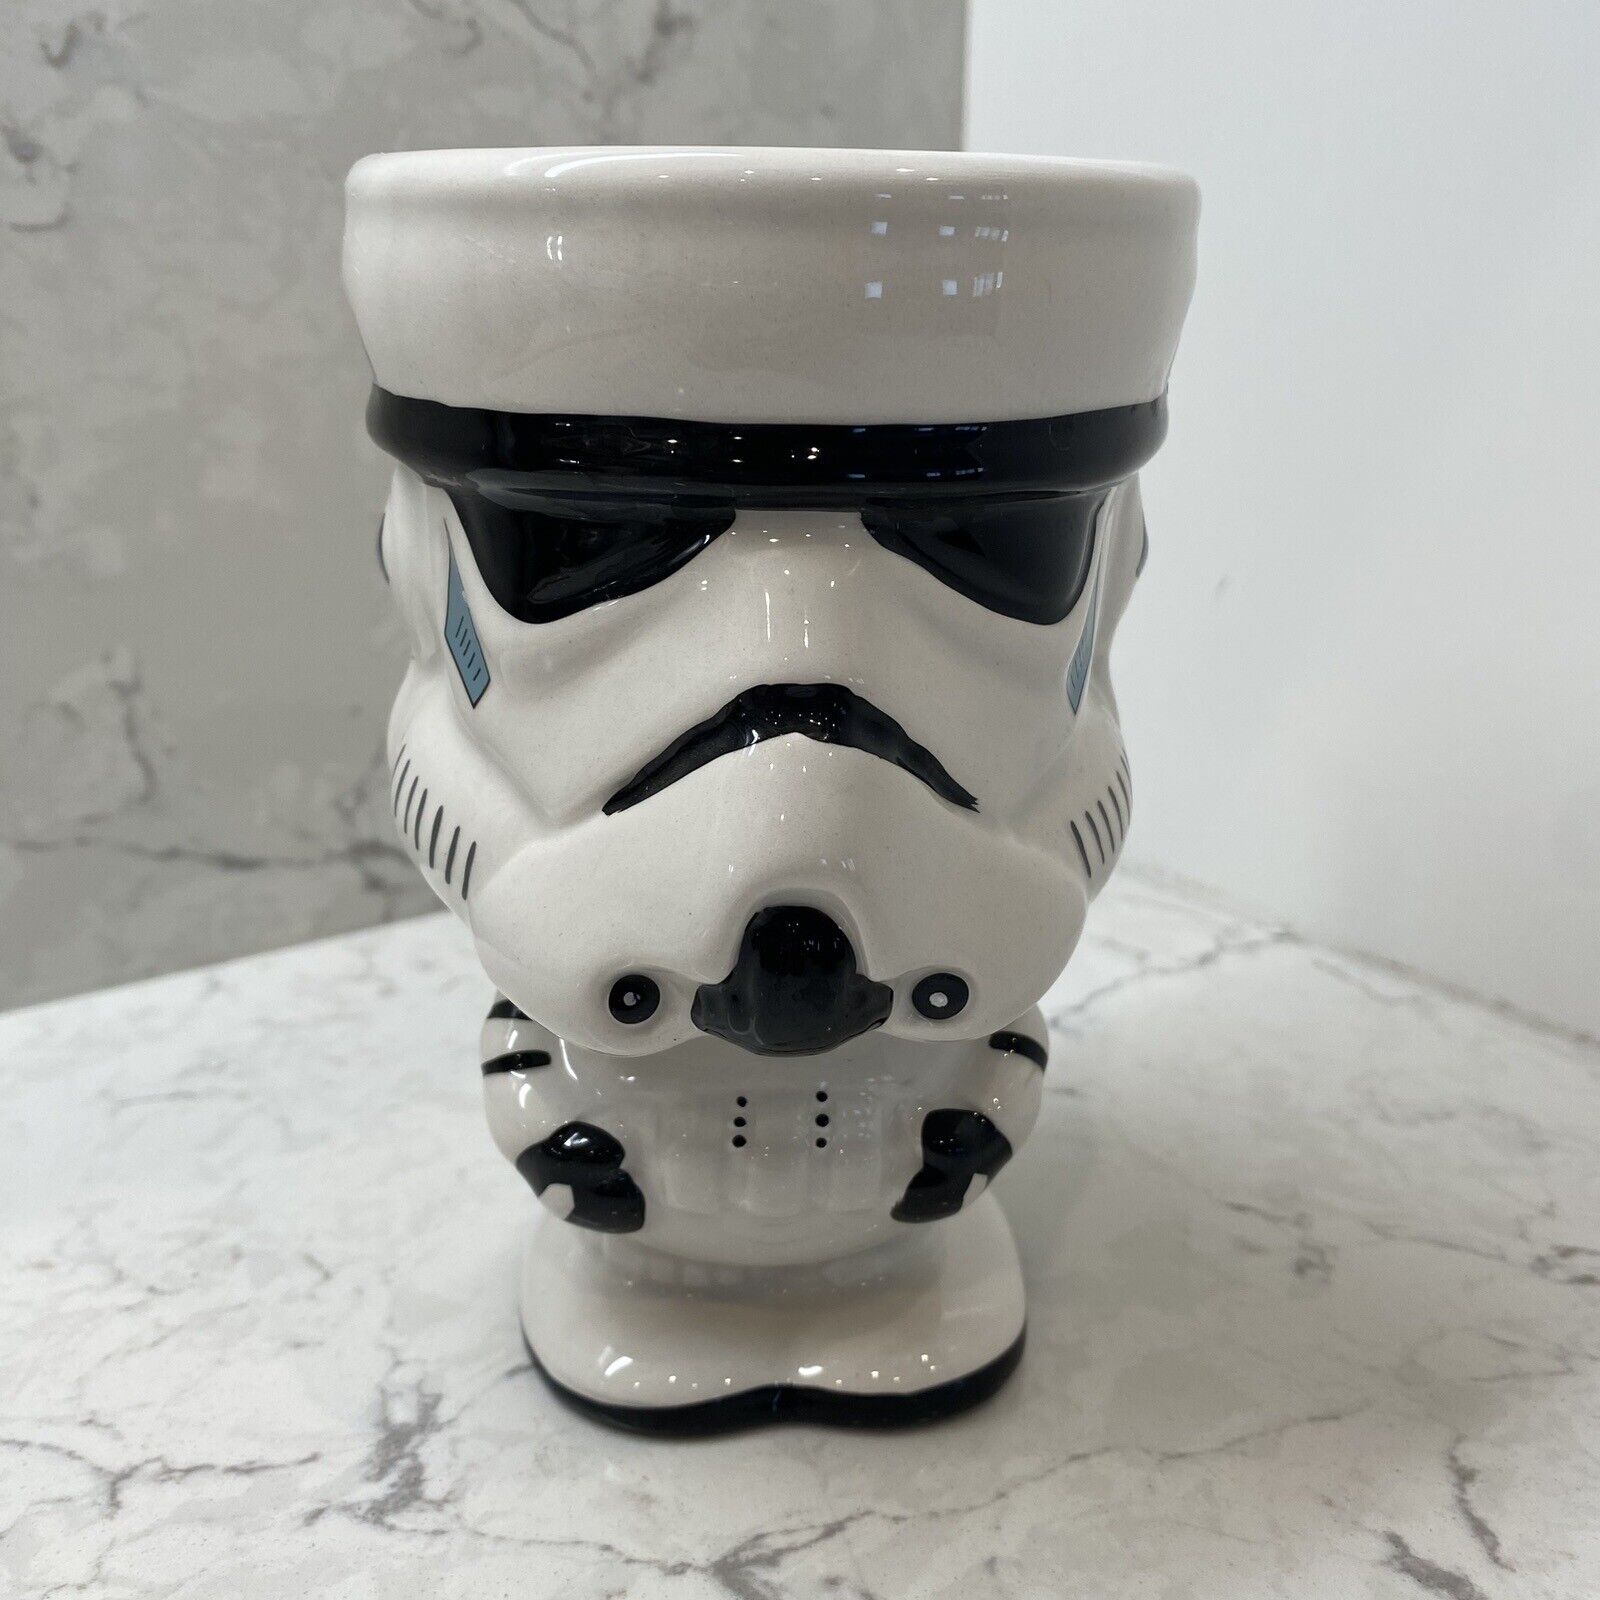 Star Wars Galerie Storm Trooper Ceramic Planter Goblet Mug Collectible